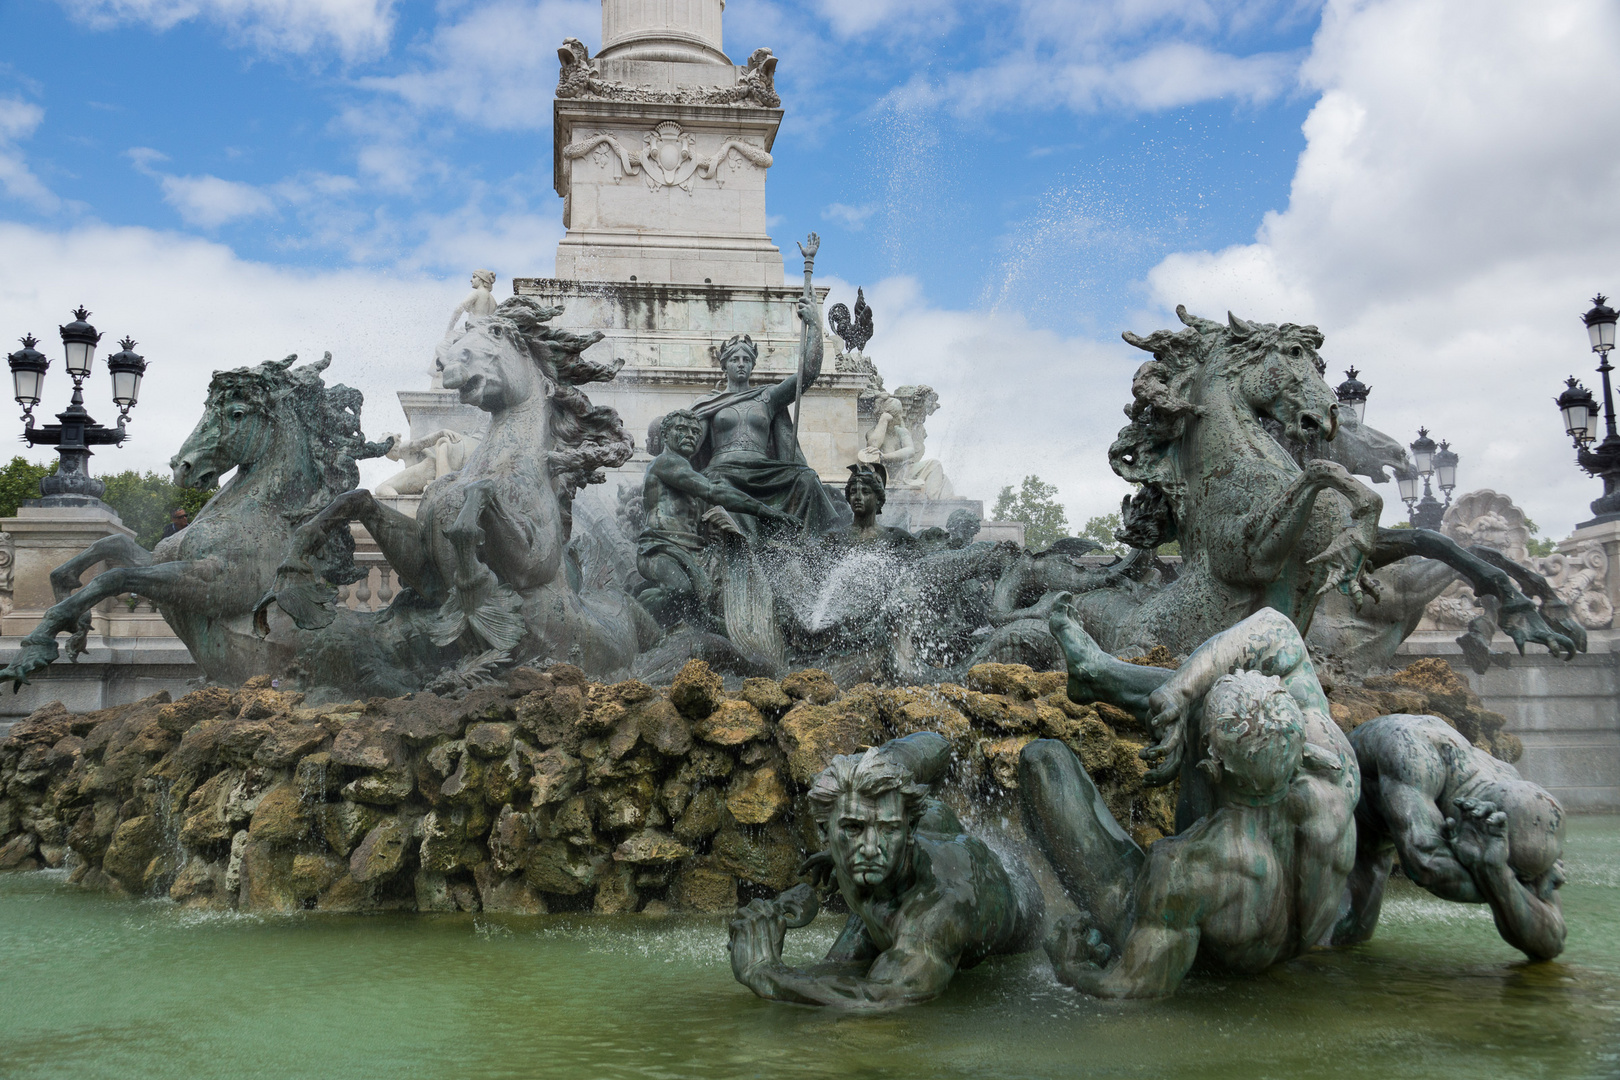 Bordeaux 2015 - Brunnen am "Monument aux Girondins"